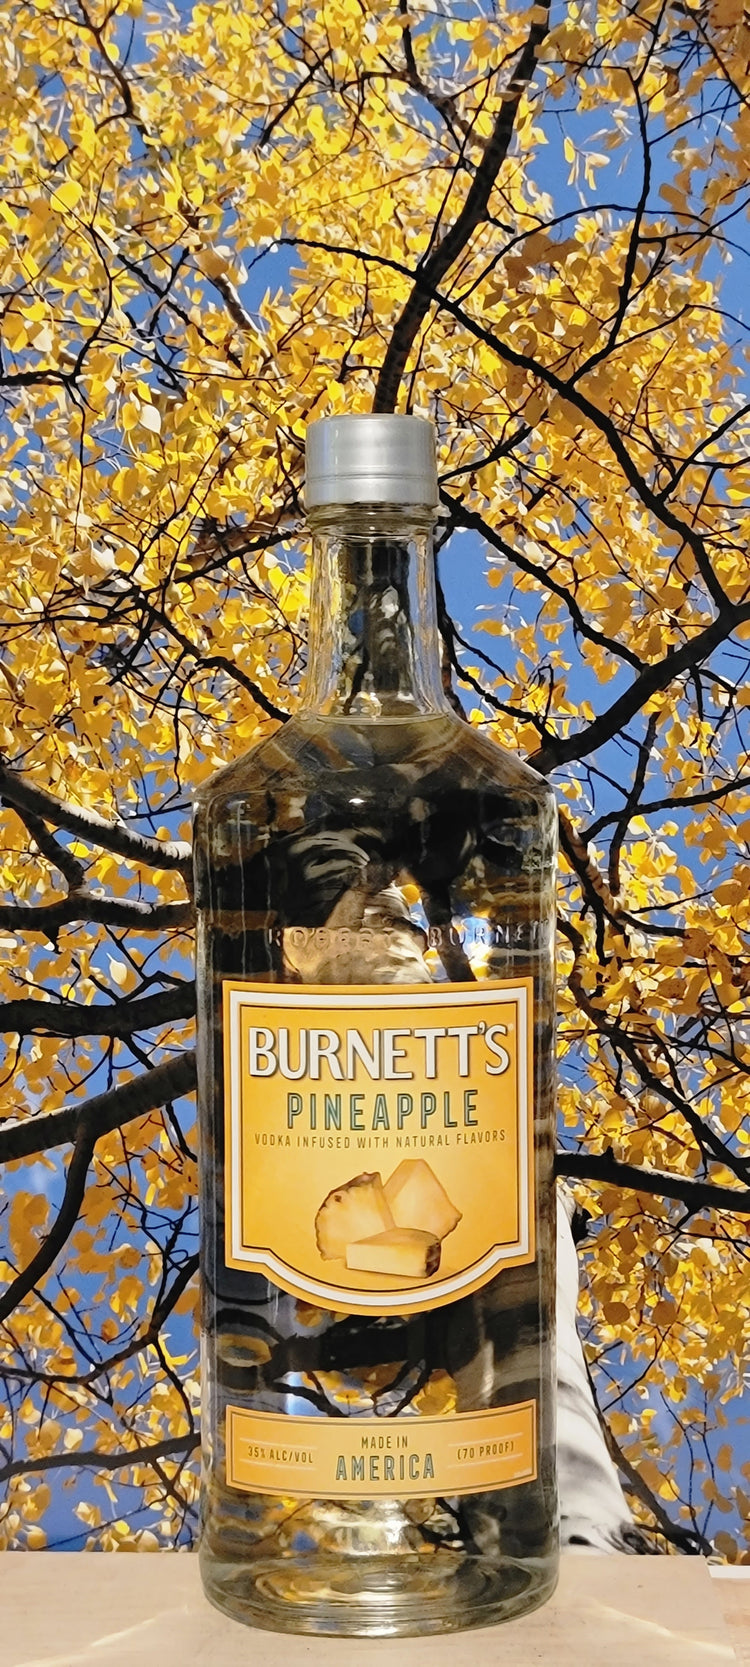 Burnett's pineapple vodka